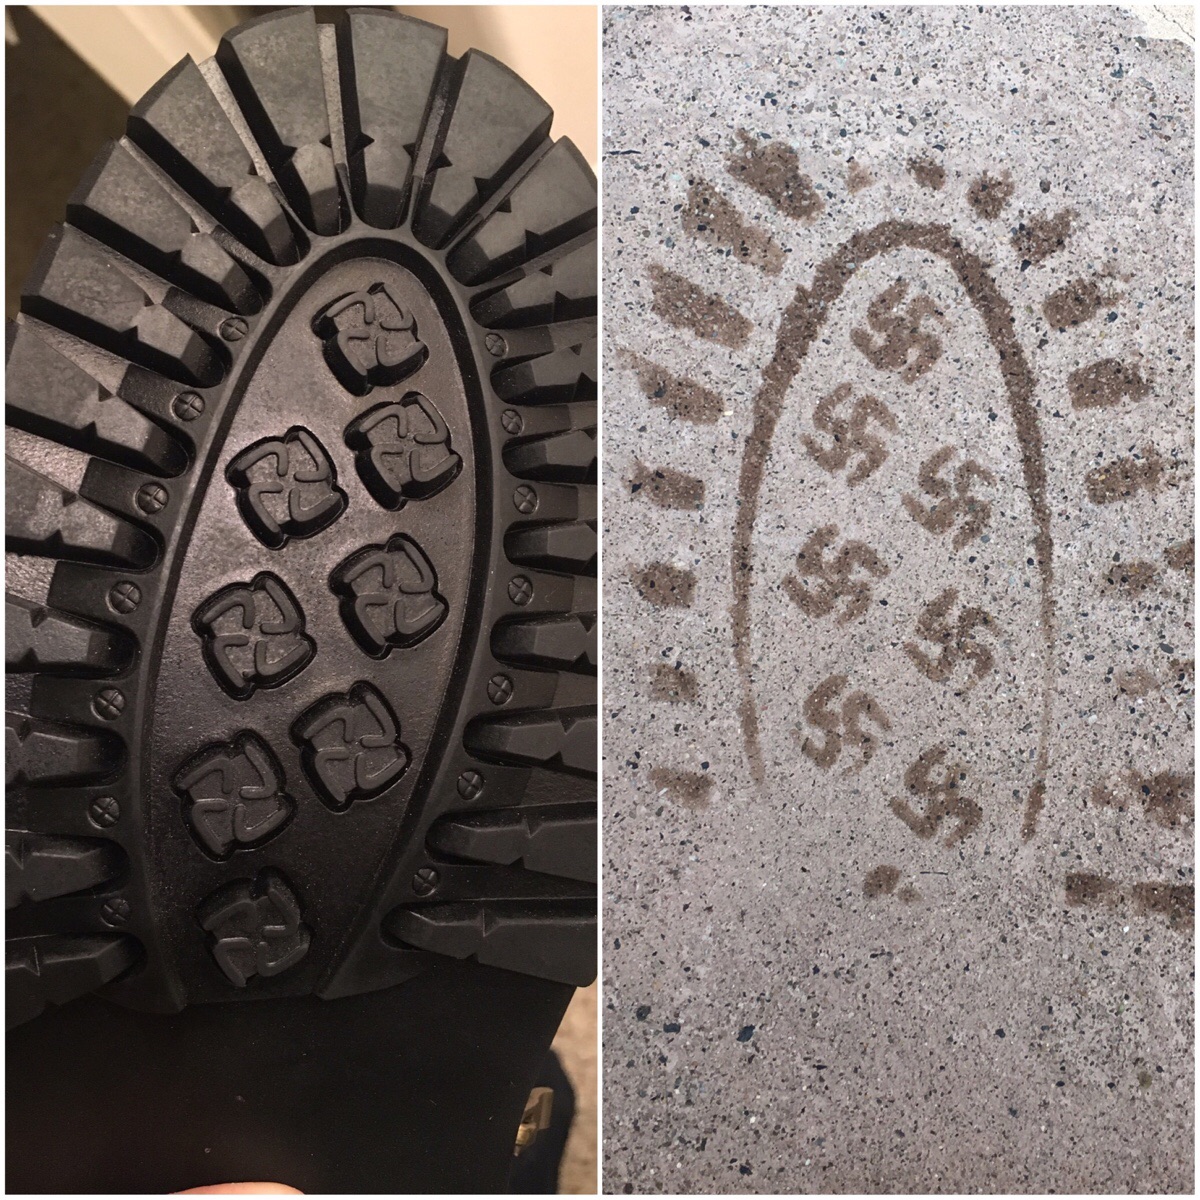 Jewcy.com | Swastika Shoes Recalled